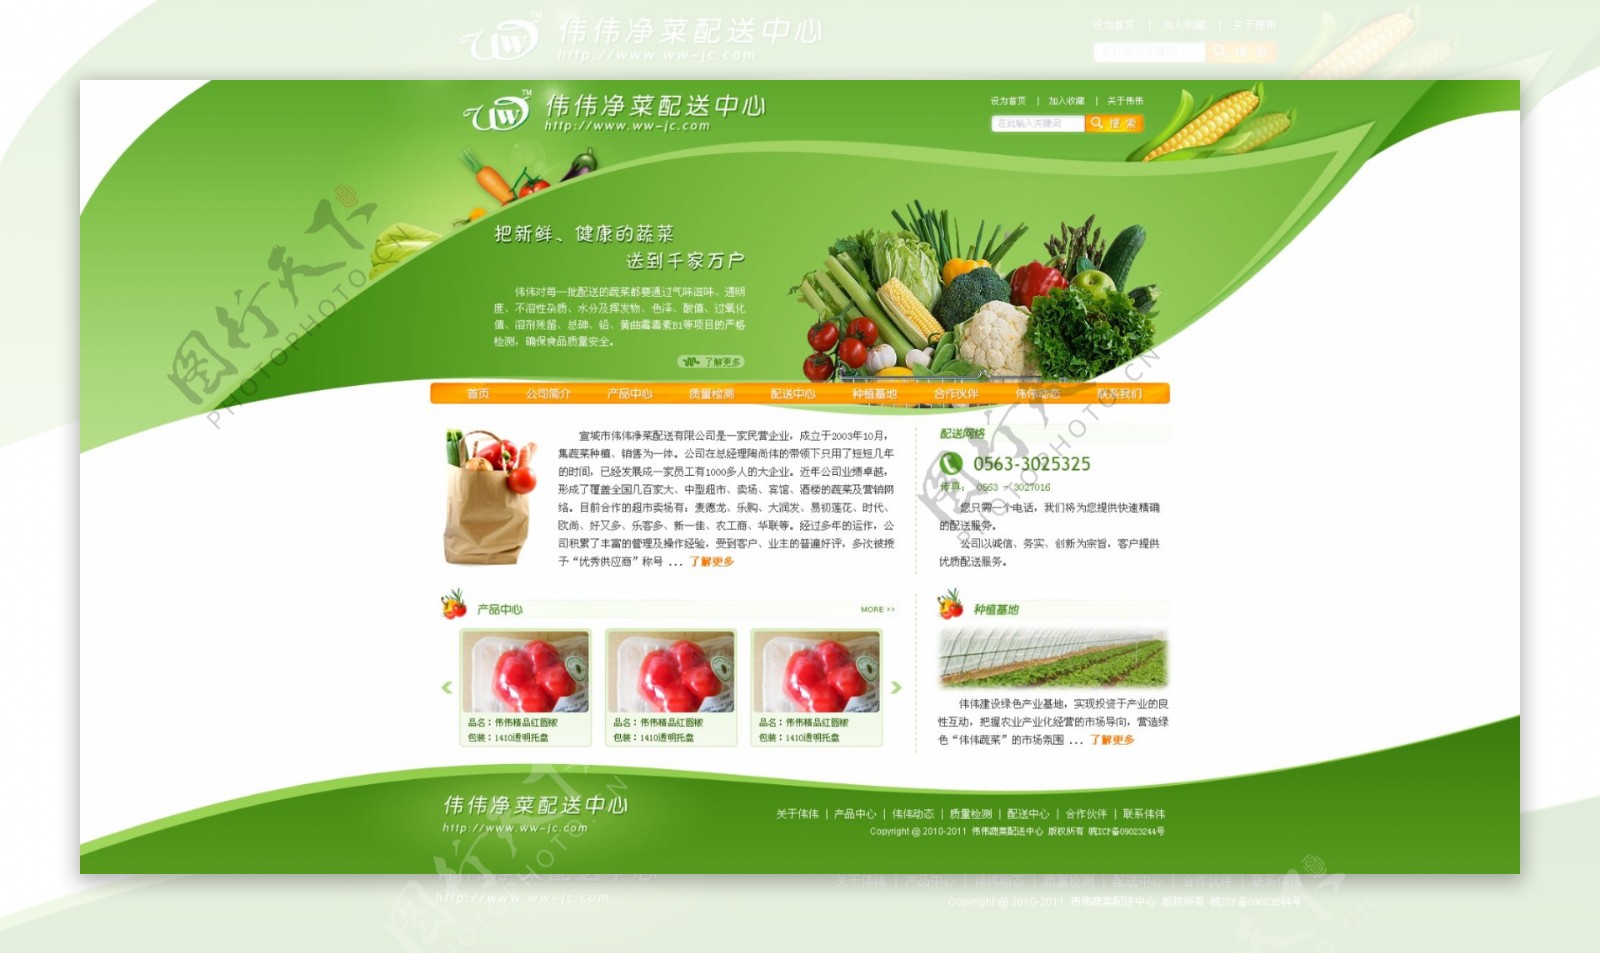 蔬菜配送中心网站模板图片